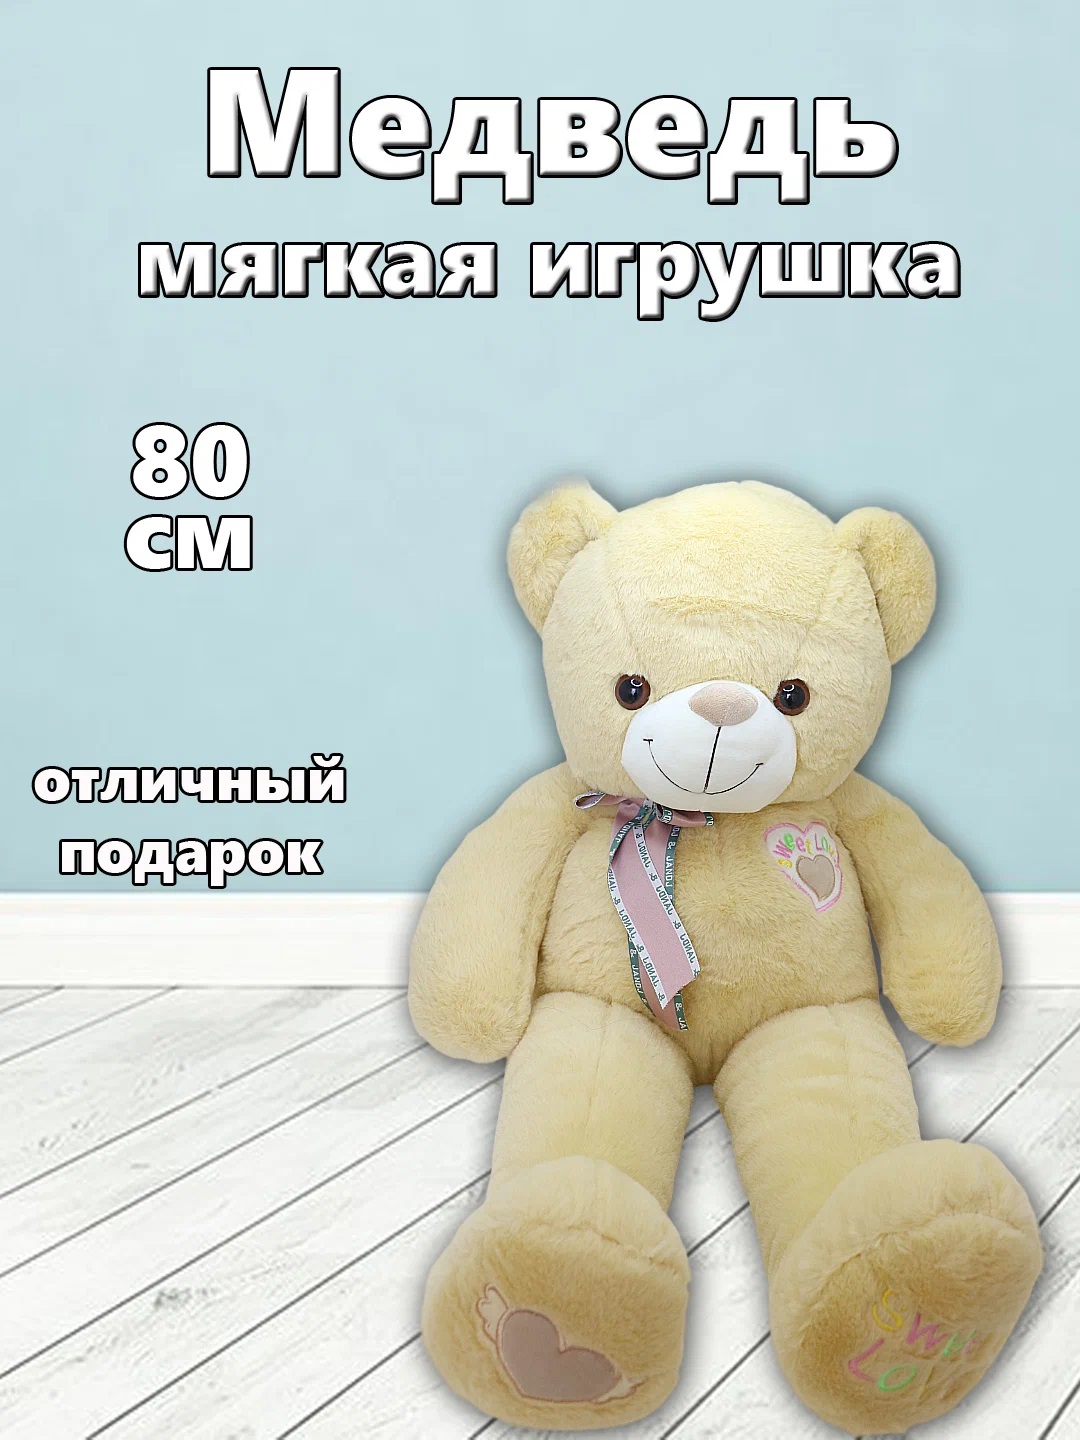 Мягкая игрушка TM S+S Медведь 80см коричневый мягкая игрушка sima land медведь коричневый